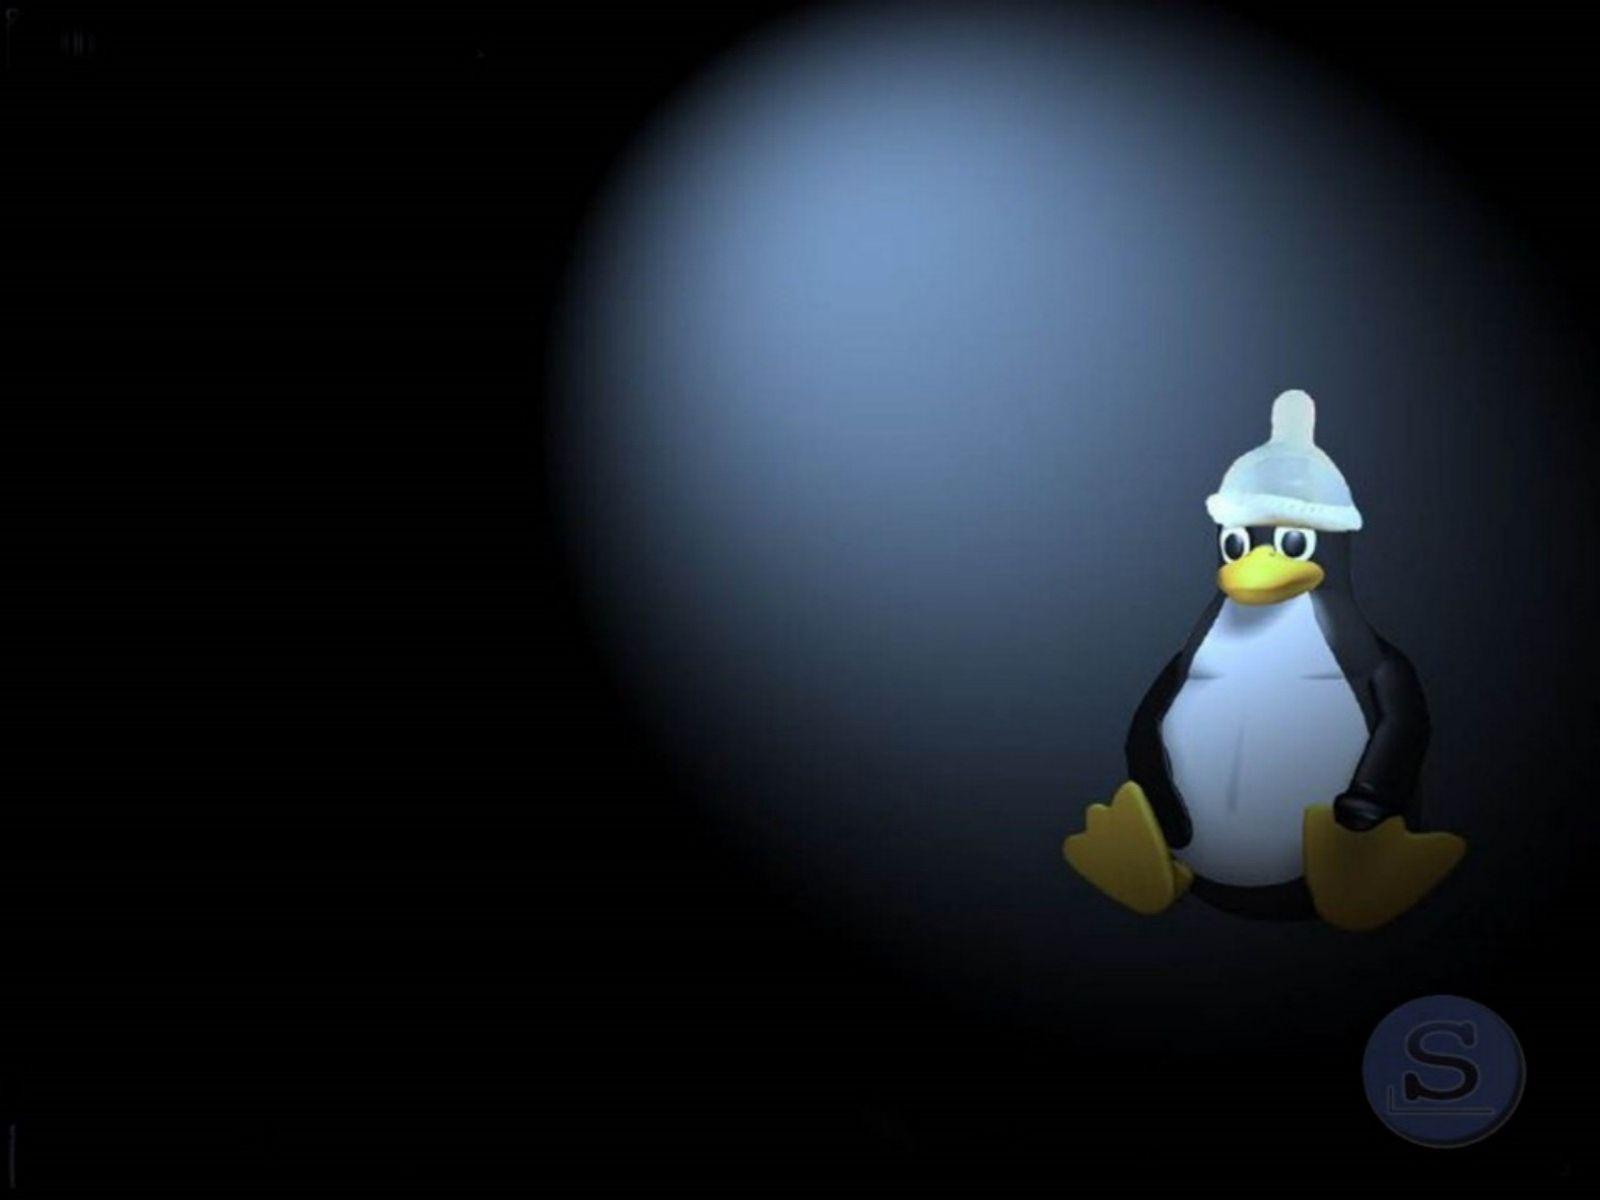 Slackware Пингвин